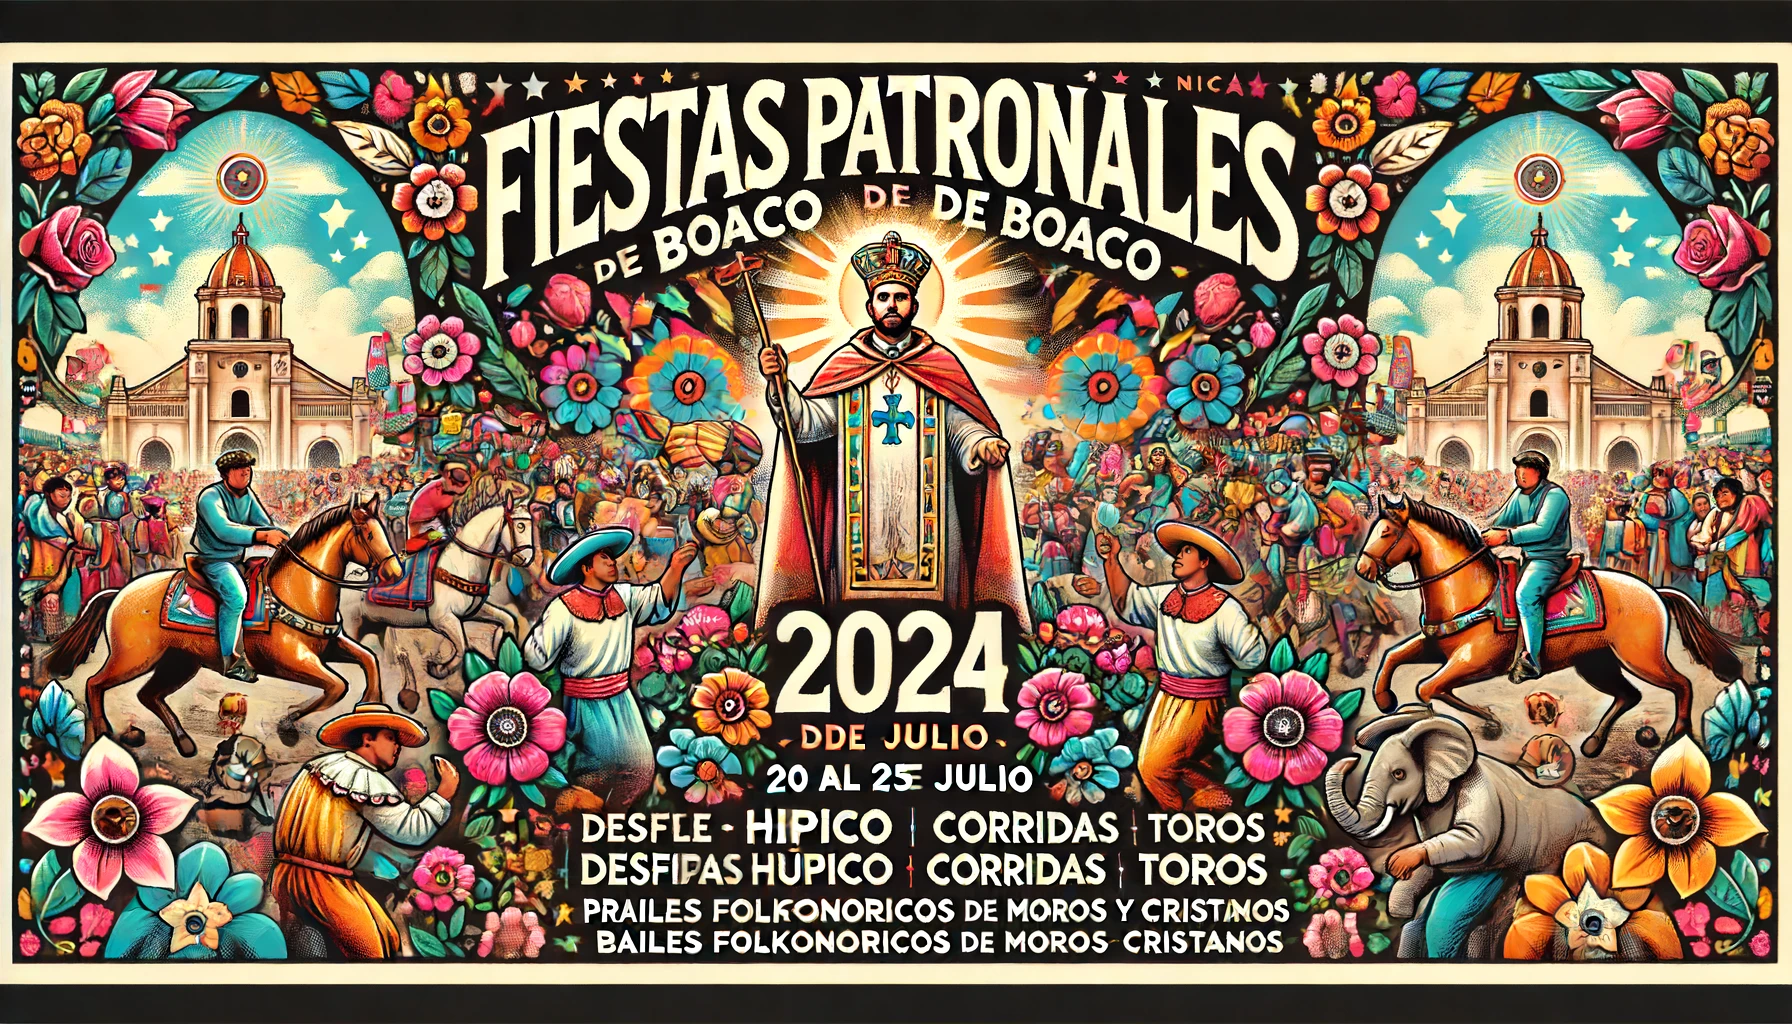 Fiestas Patronales de Boaco 2024